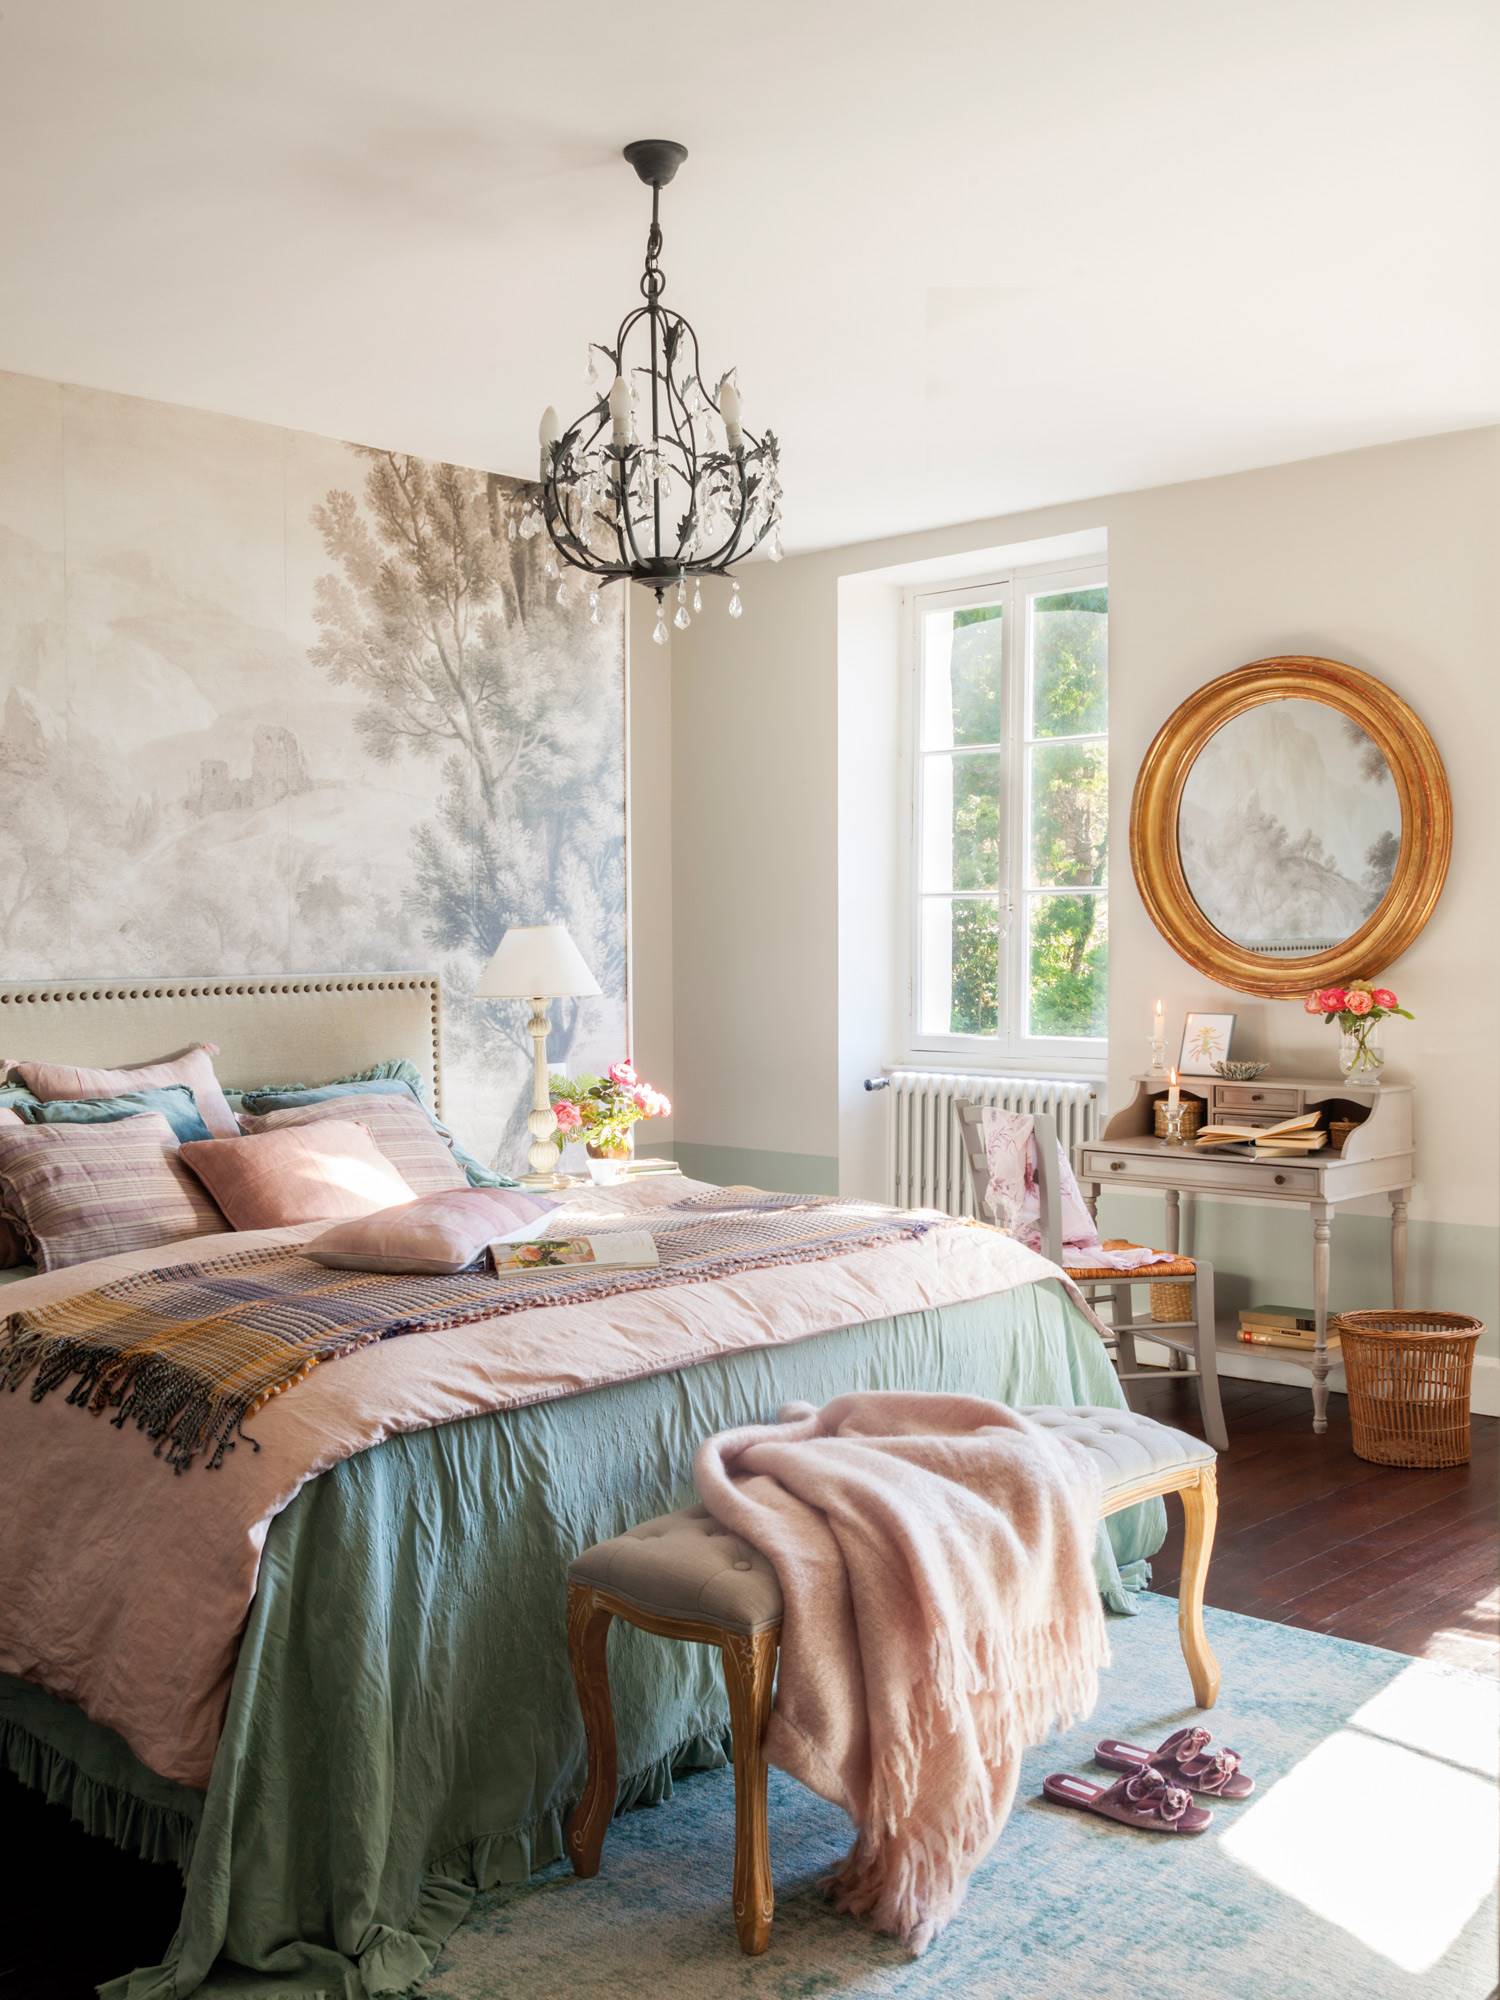 Dormitorio romántico con cabecero tapizado con tachuelas, pared con mural bucólico y lámpara de araña suspendida.